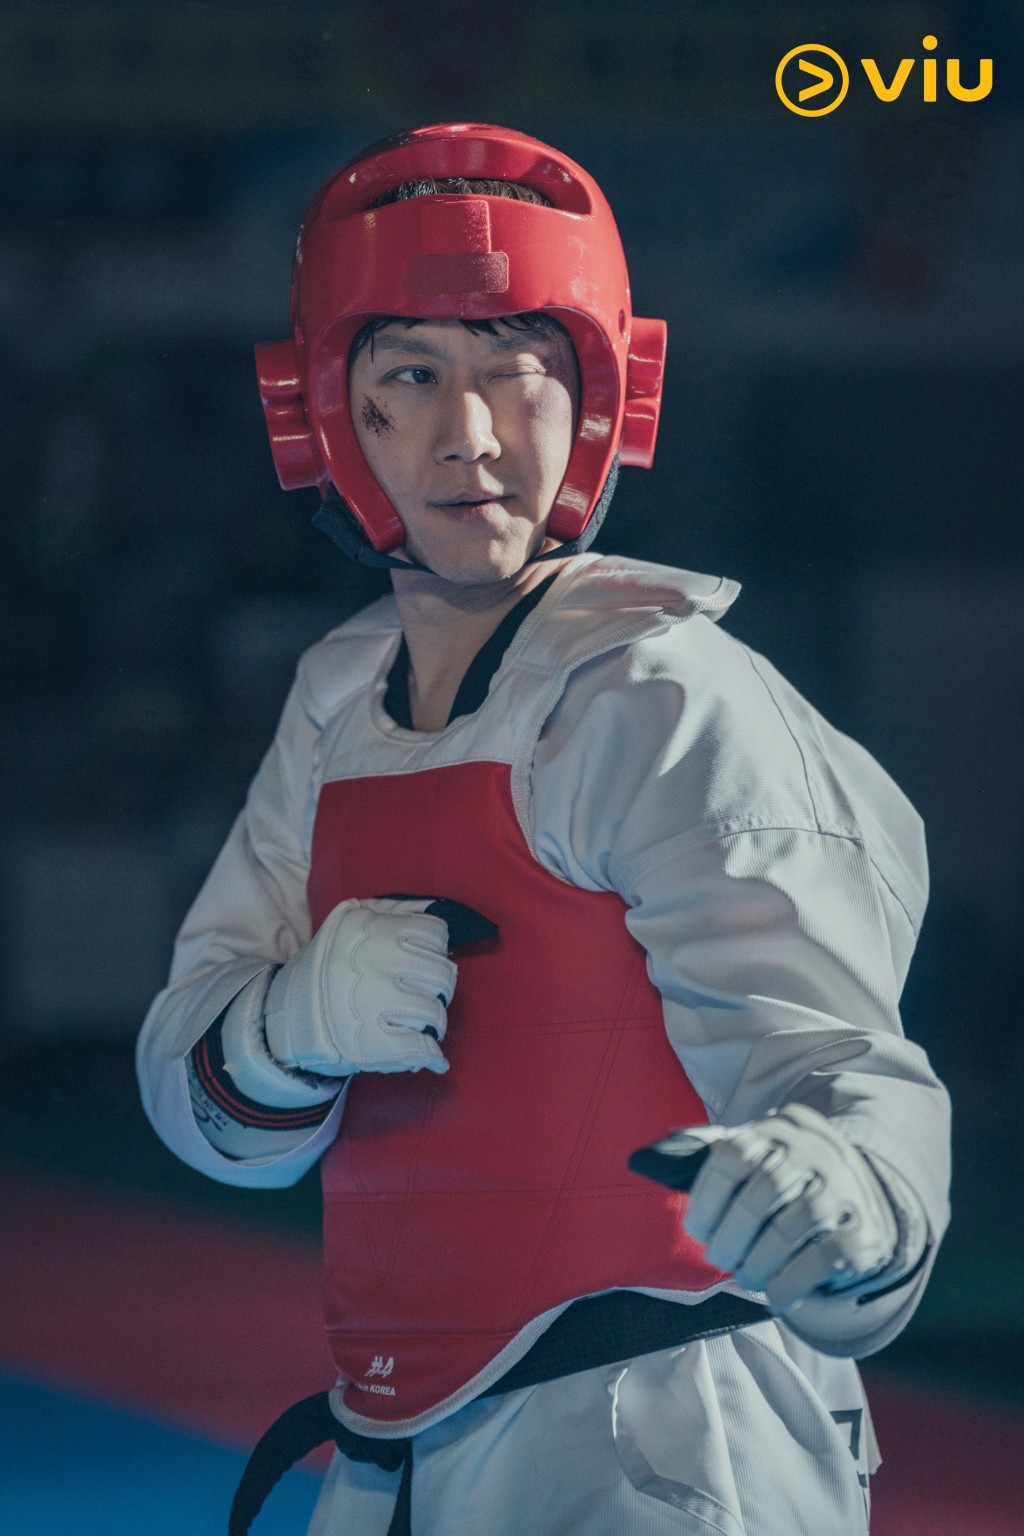 鄭宇飾演跆拳道國家代表。